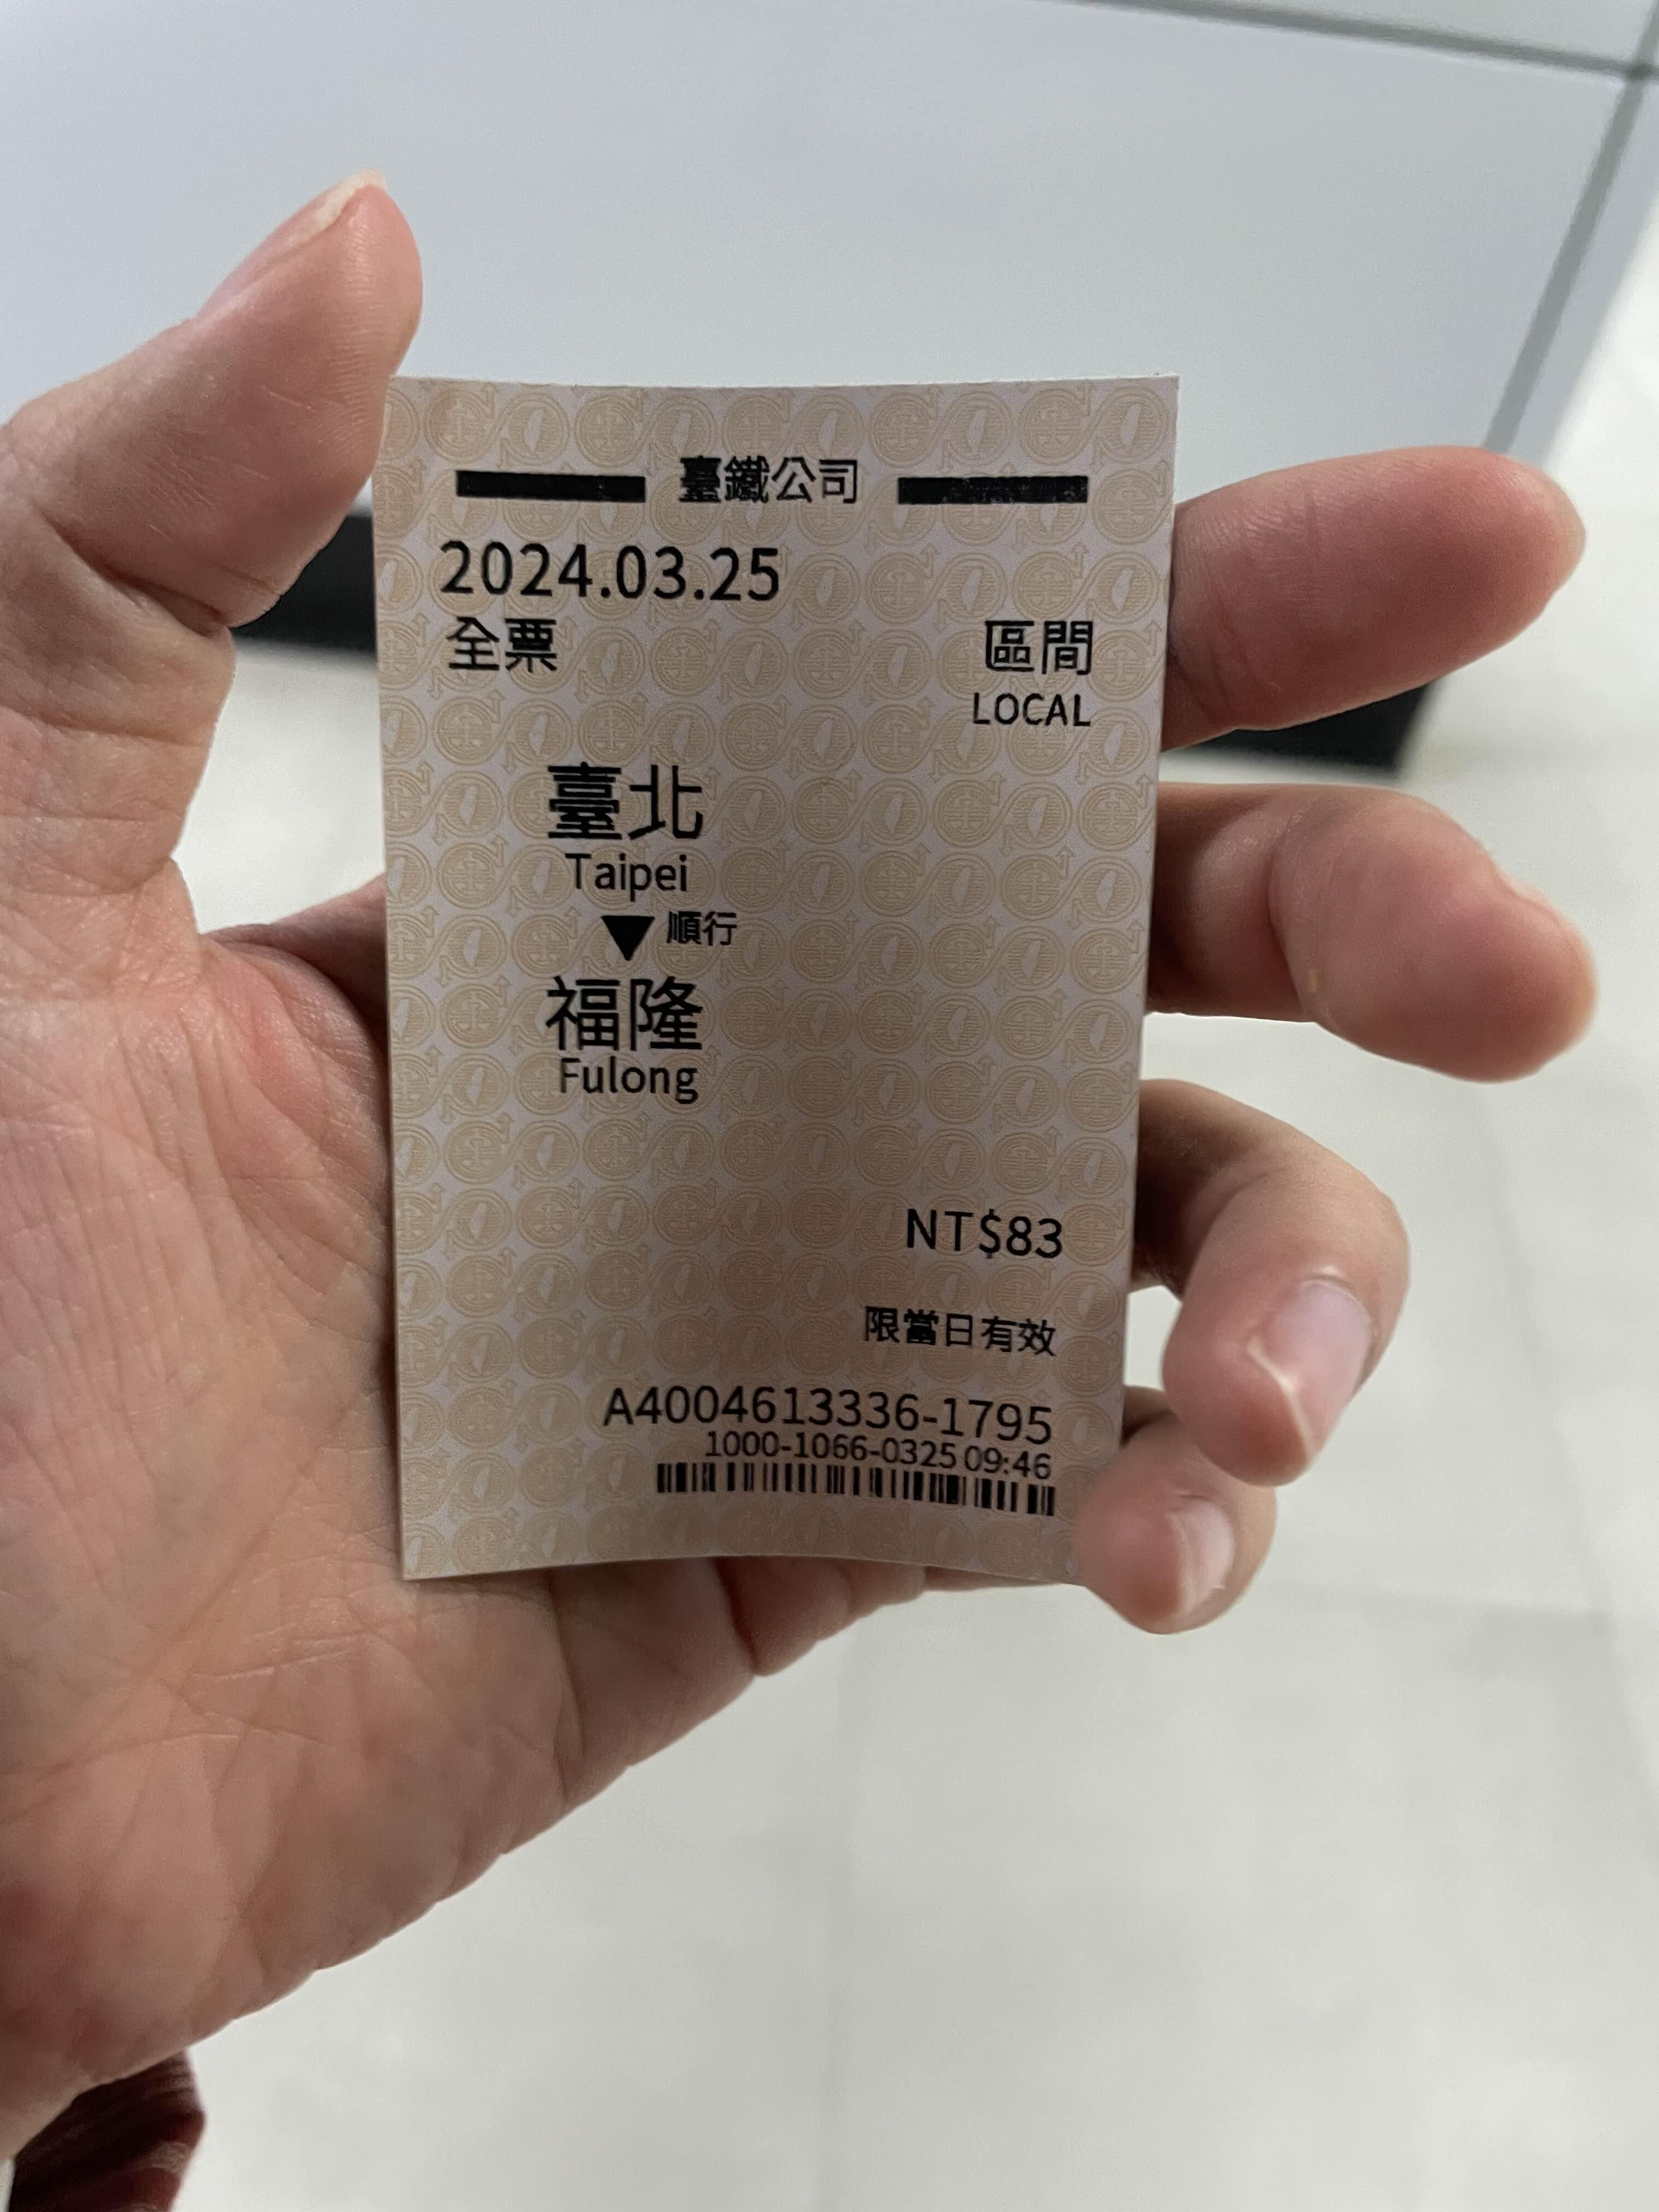 푸롱 티켓 사진